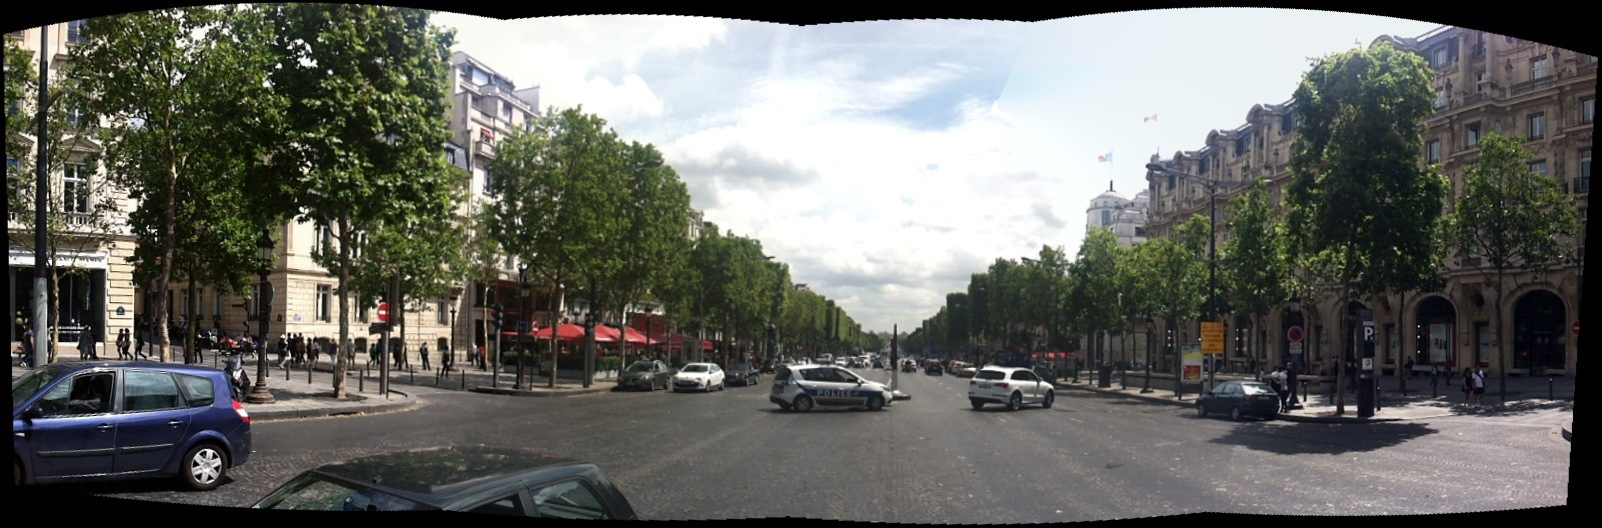 Avenue des Champs Elysees in Paris